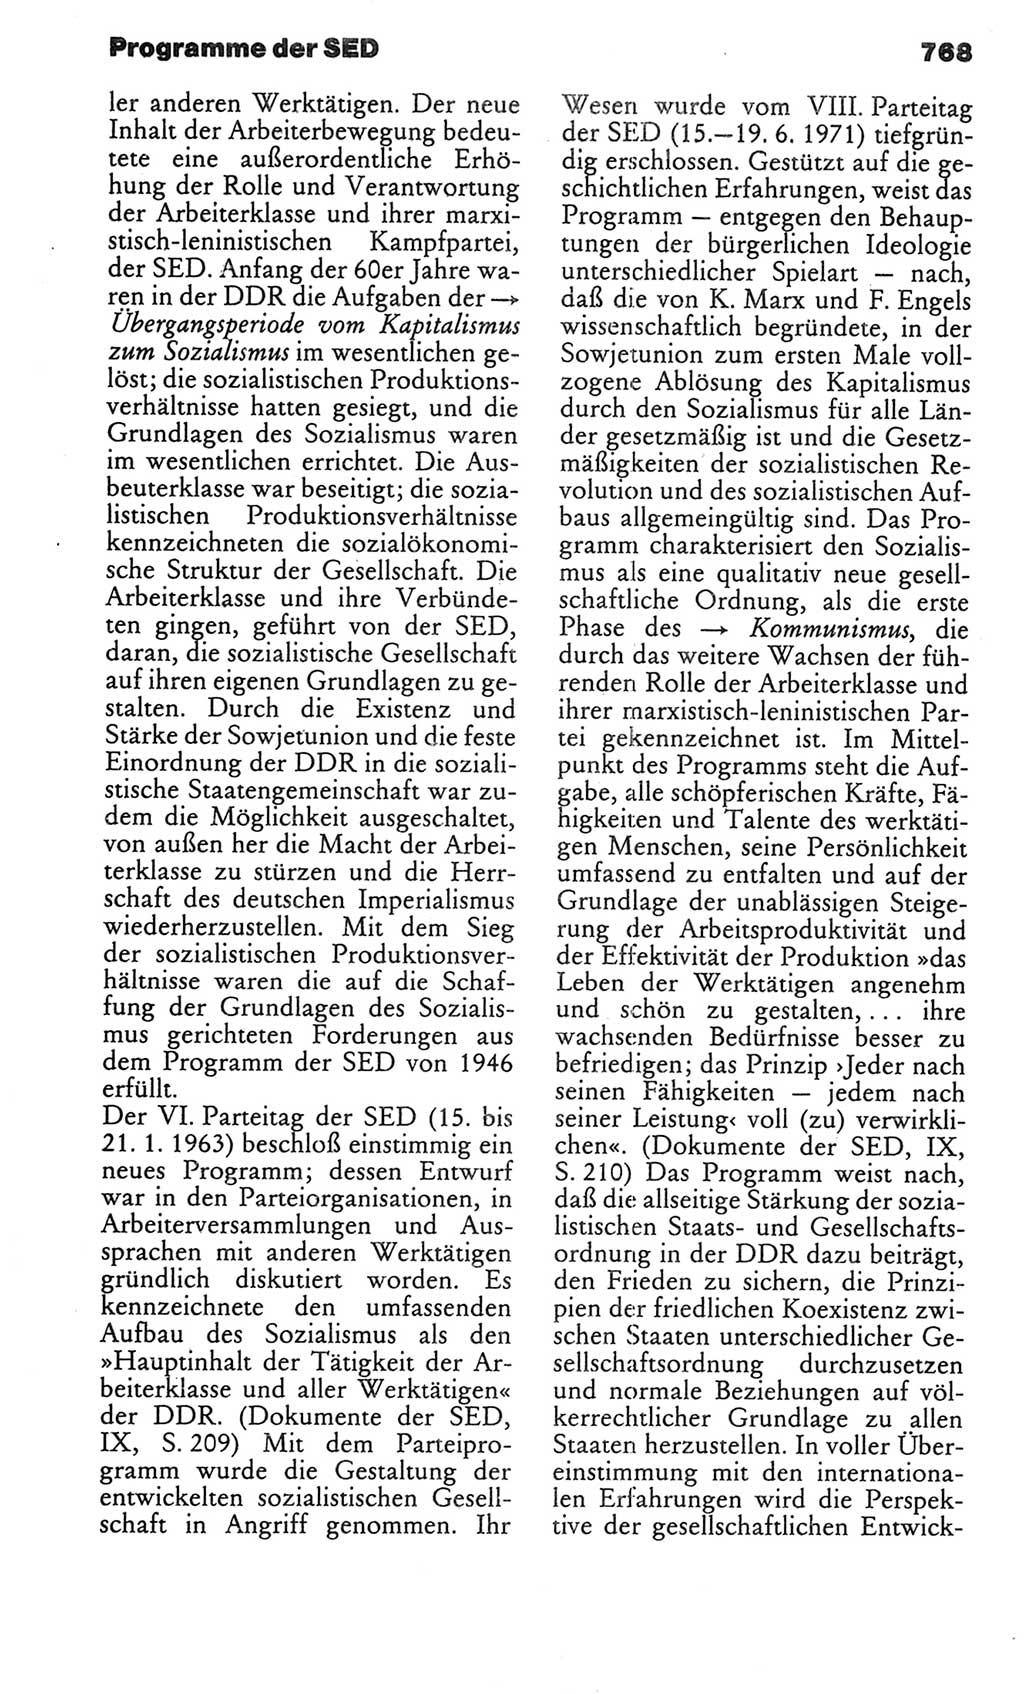 Kleines politisches Wörterbuch [Deutsche Demokratische Republik (DDR)] 1986, Seite 768 (Kl. pol. Wb. DDR 1986, S. 768)